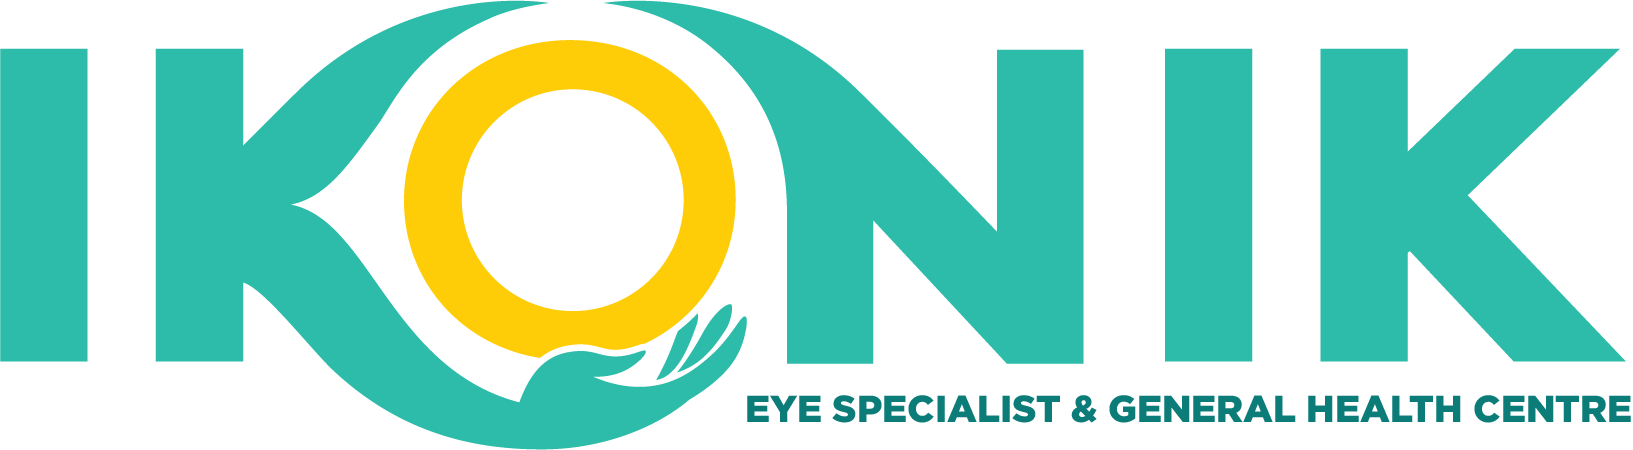 IKONIK Eye Specialist Centre